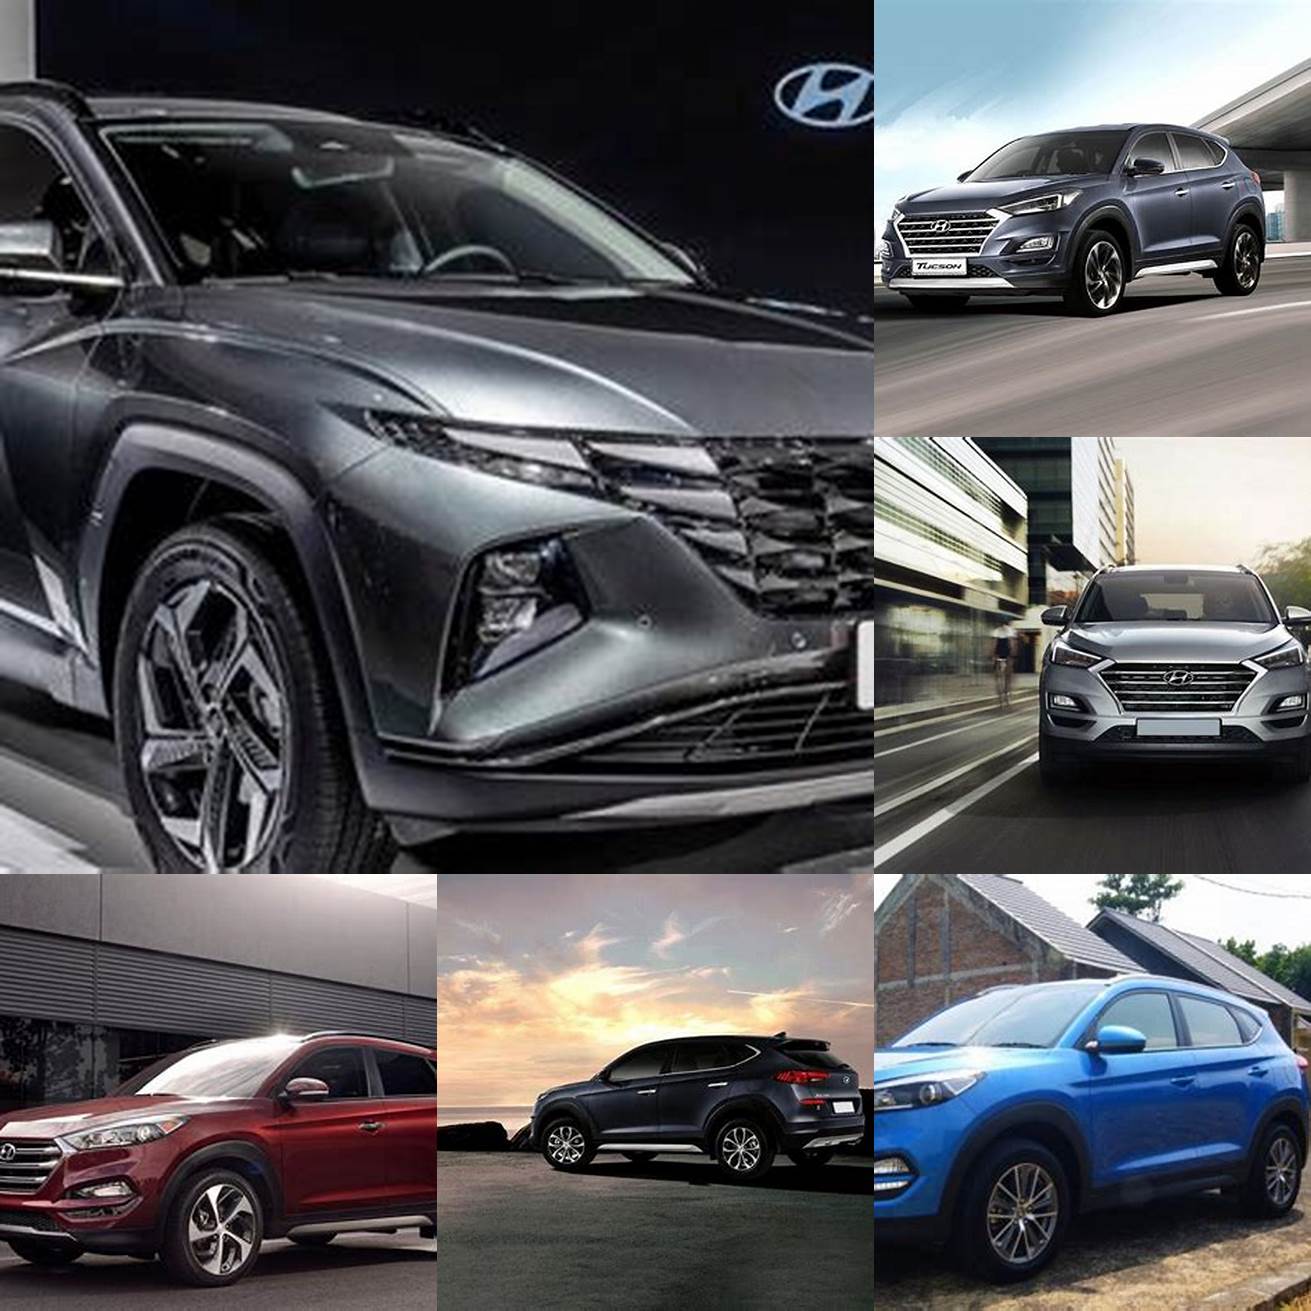 Harga Hyundai Tucson mulai dari Rp 416 juta